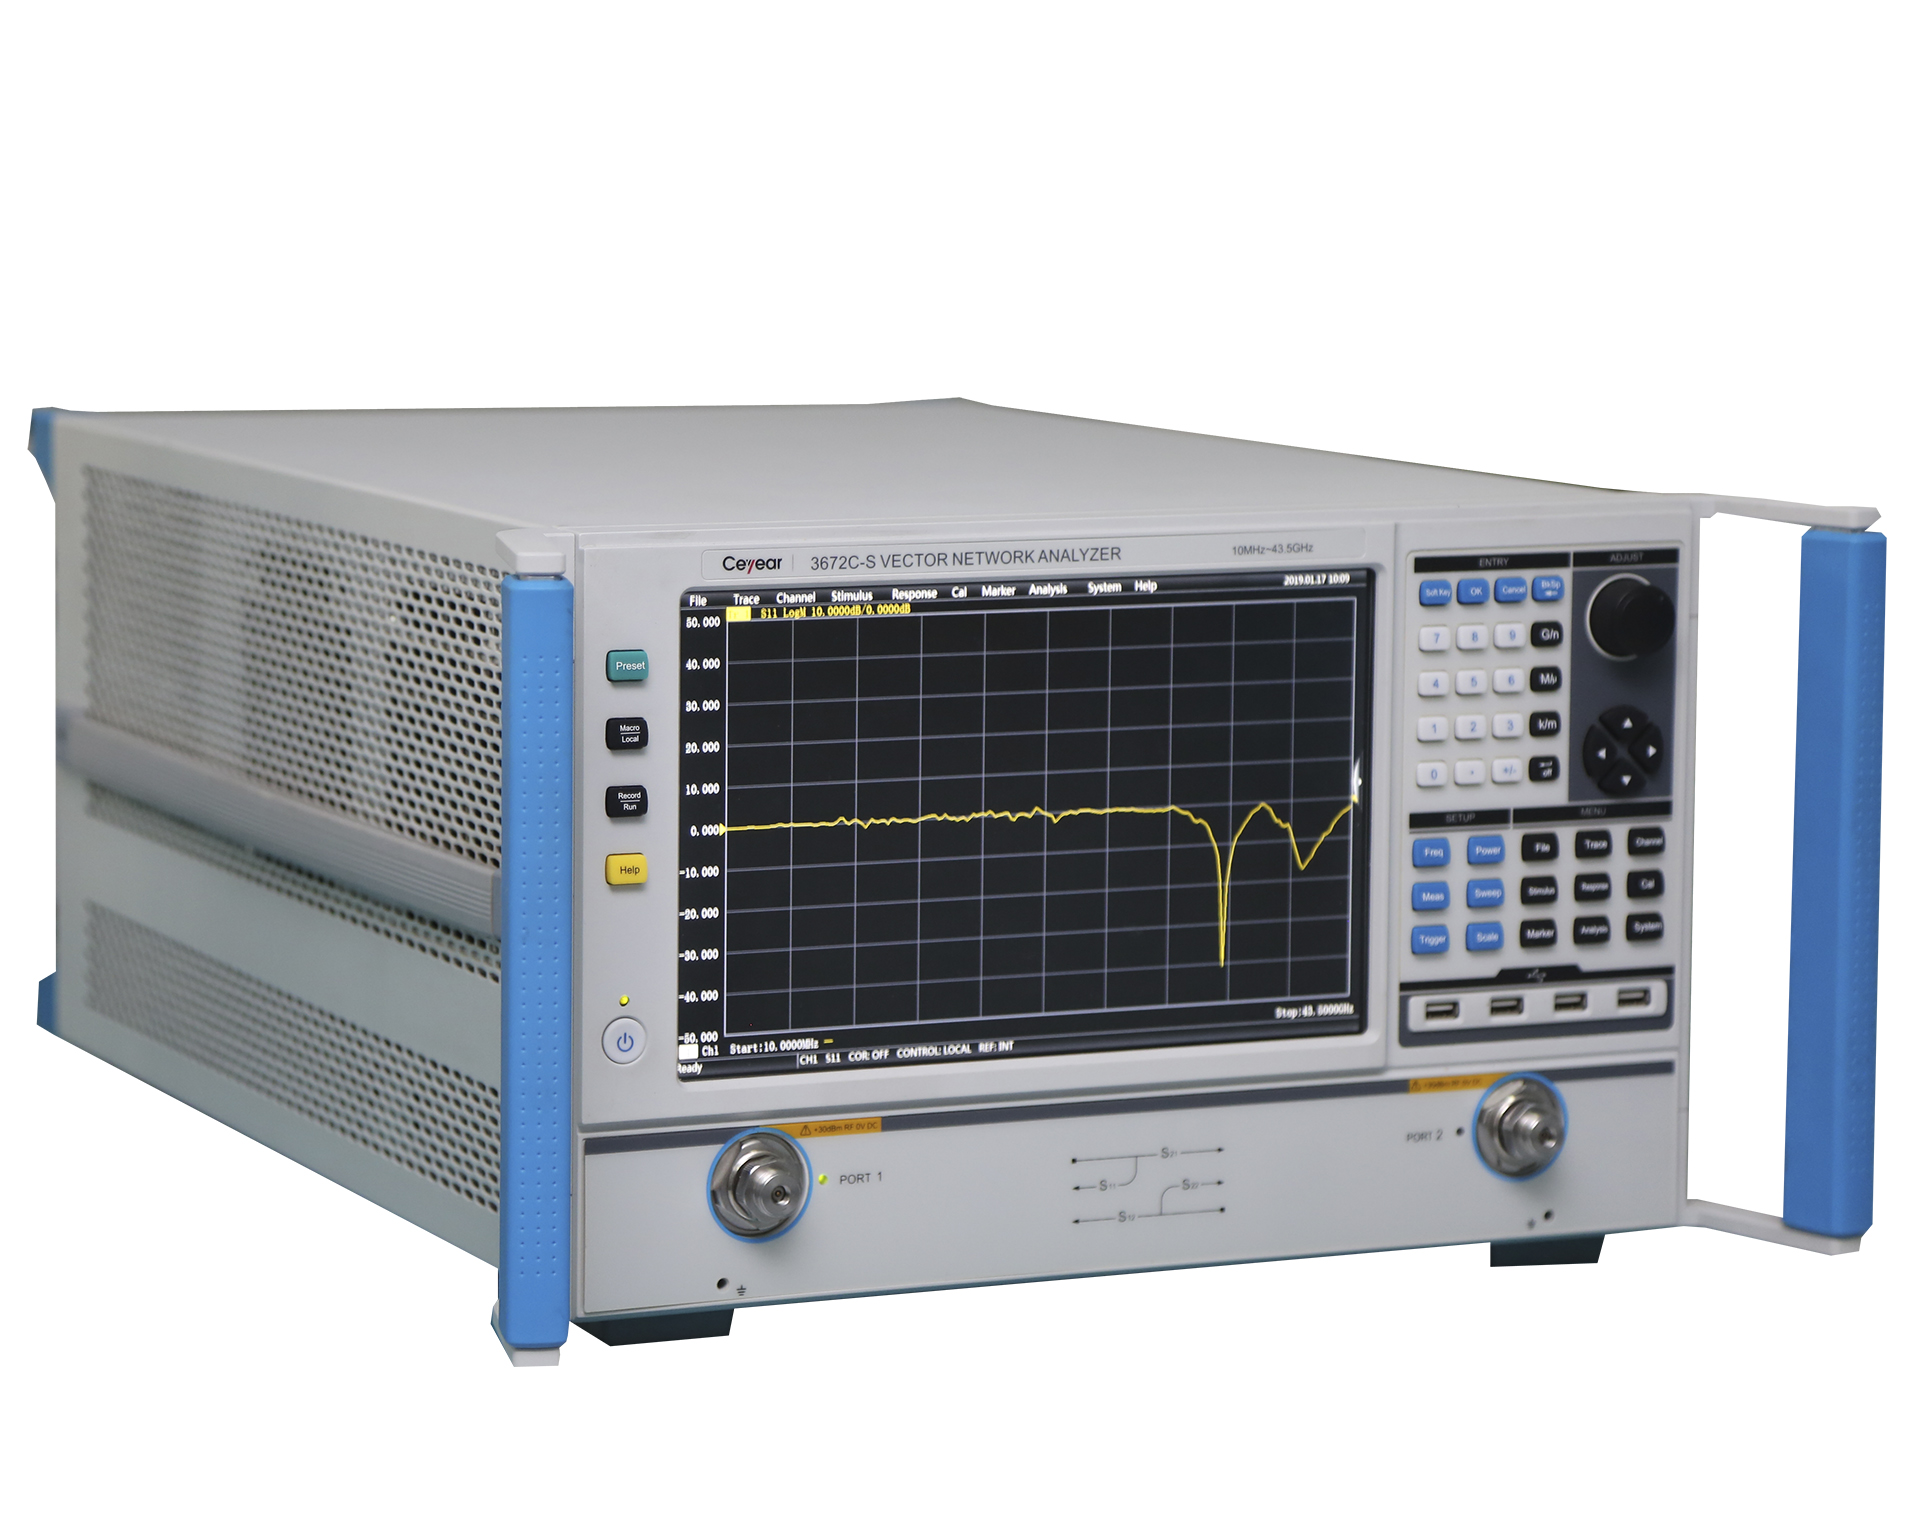 Векторные анализаторы <b>Ceyear серии 3672-S:</b> 3672A/B/C с диапазоном частот от 10 МГц до 43,5 ГГц